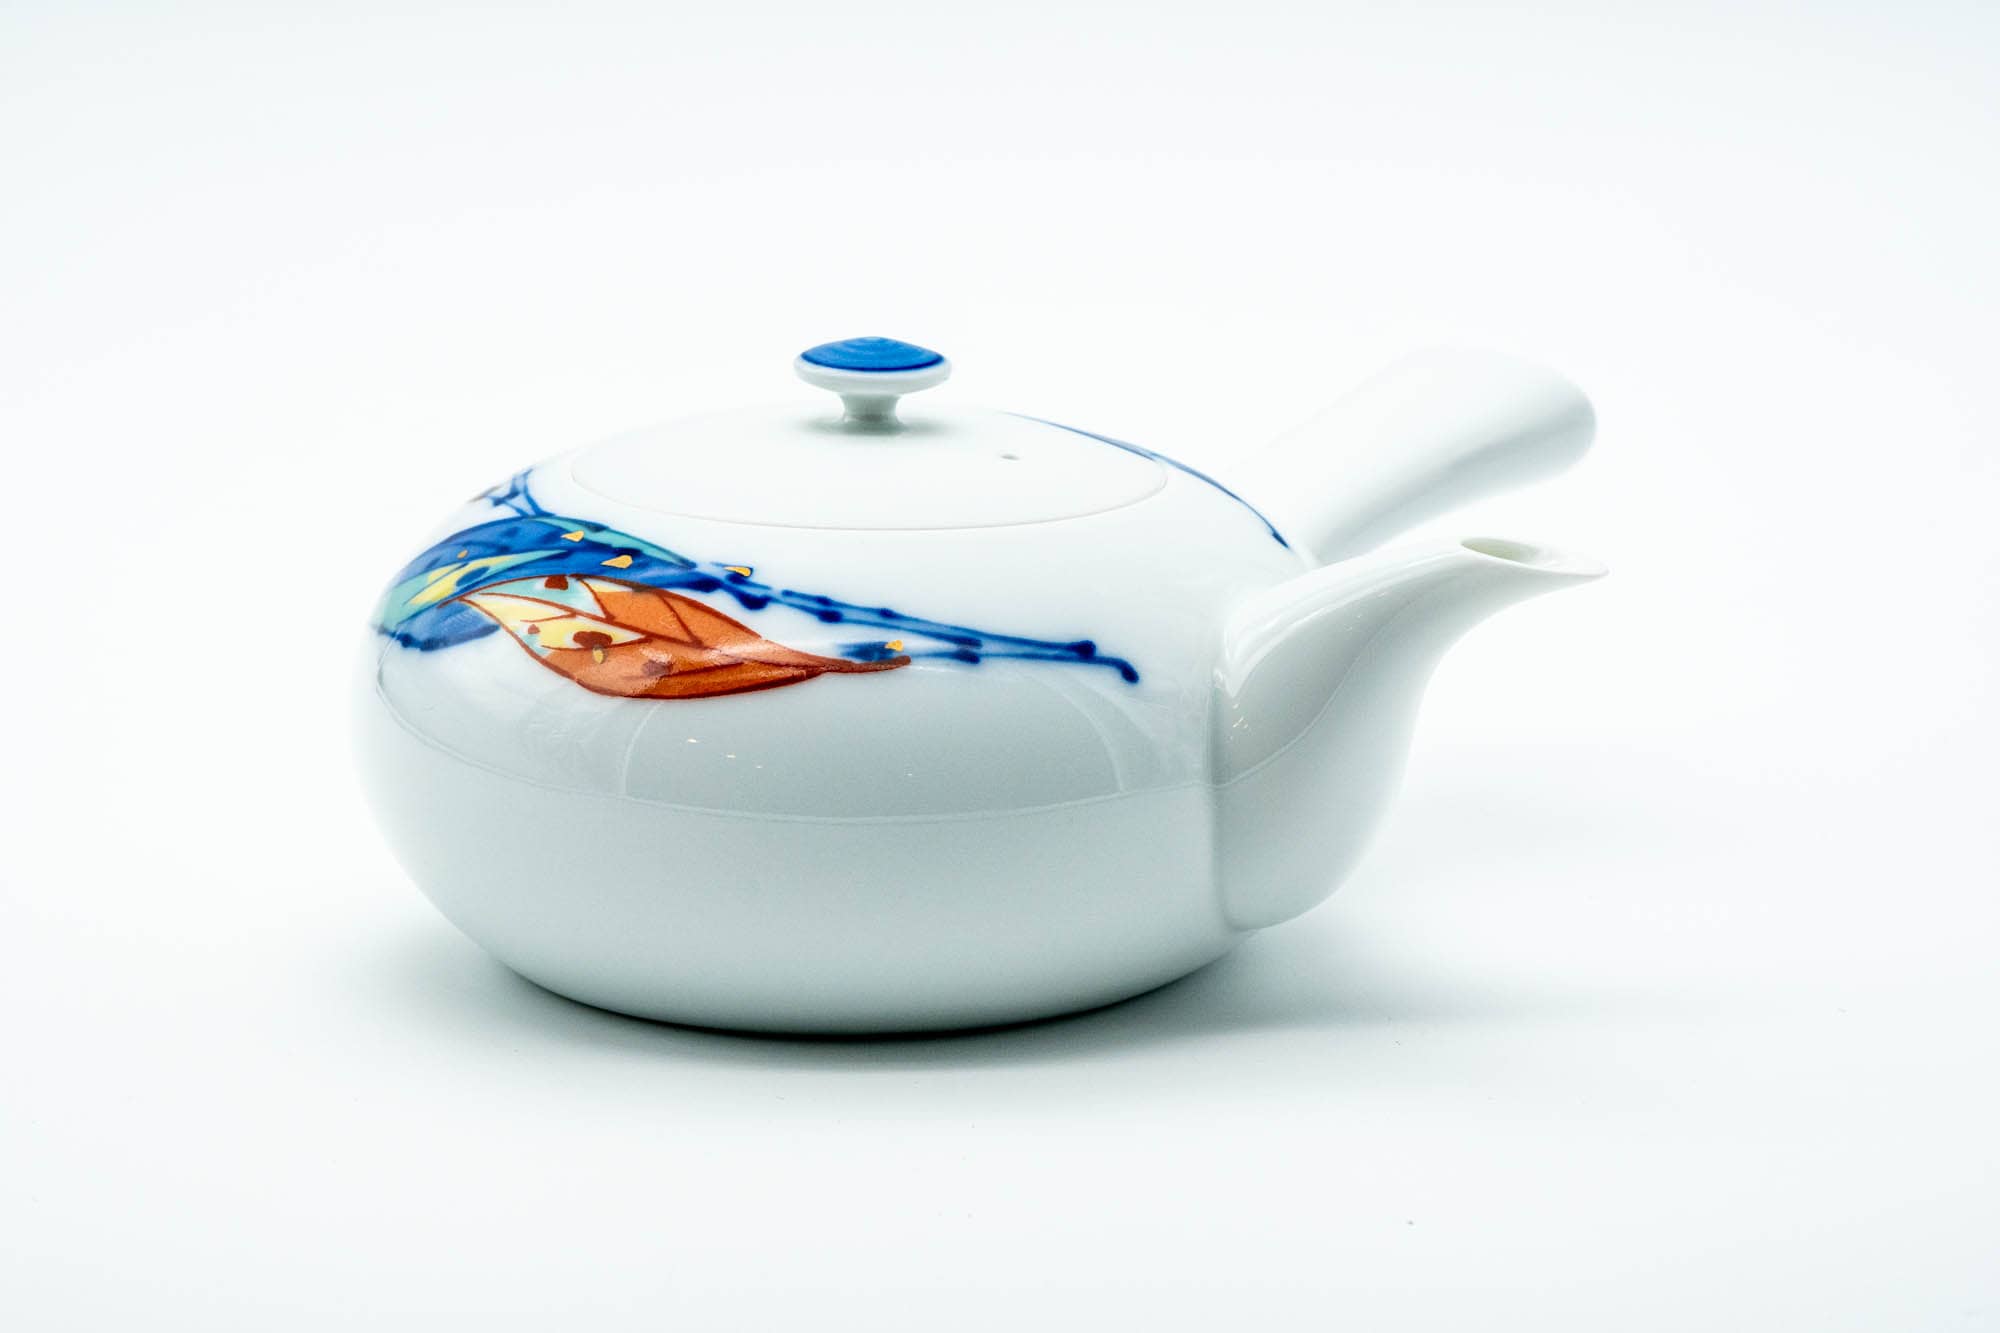 Japanese Kyusu - Blue Orange Leaves Arita-yaki Porcelain Teapot - 350ml